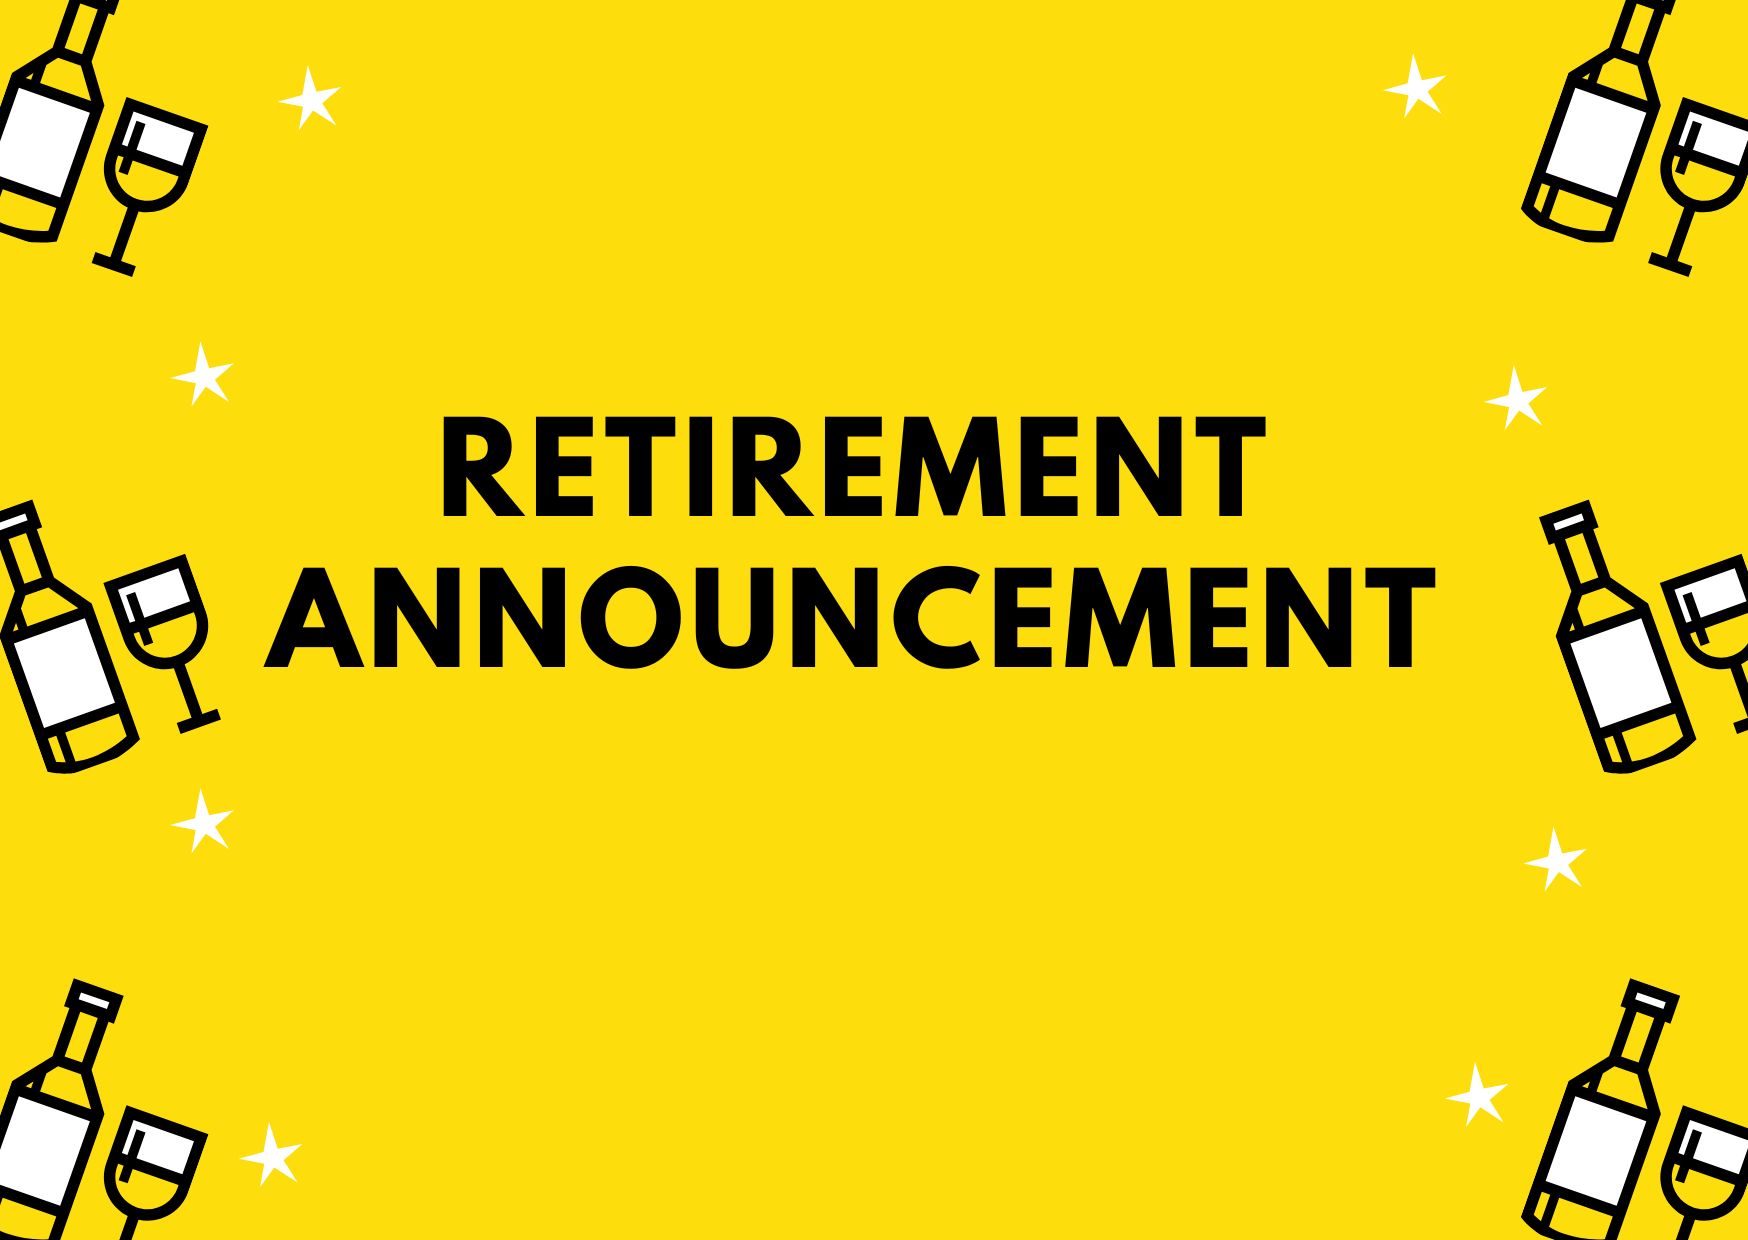 retirement announcement